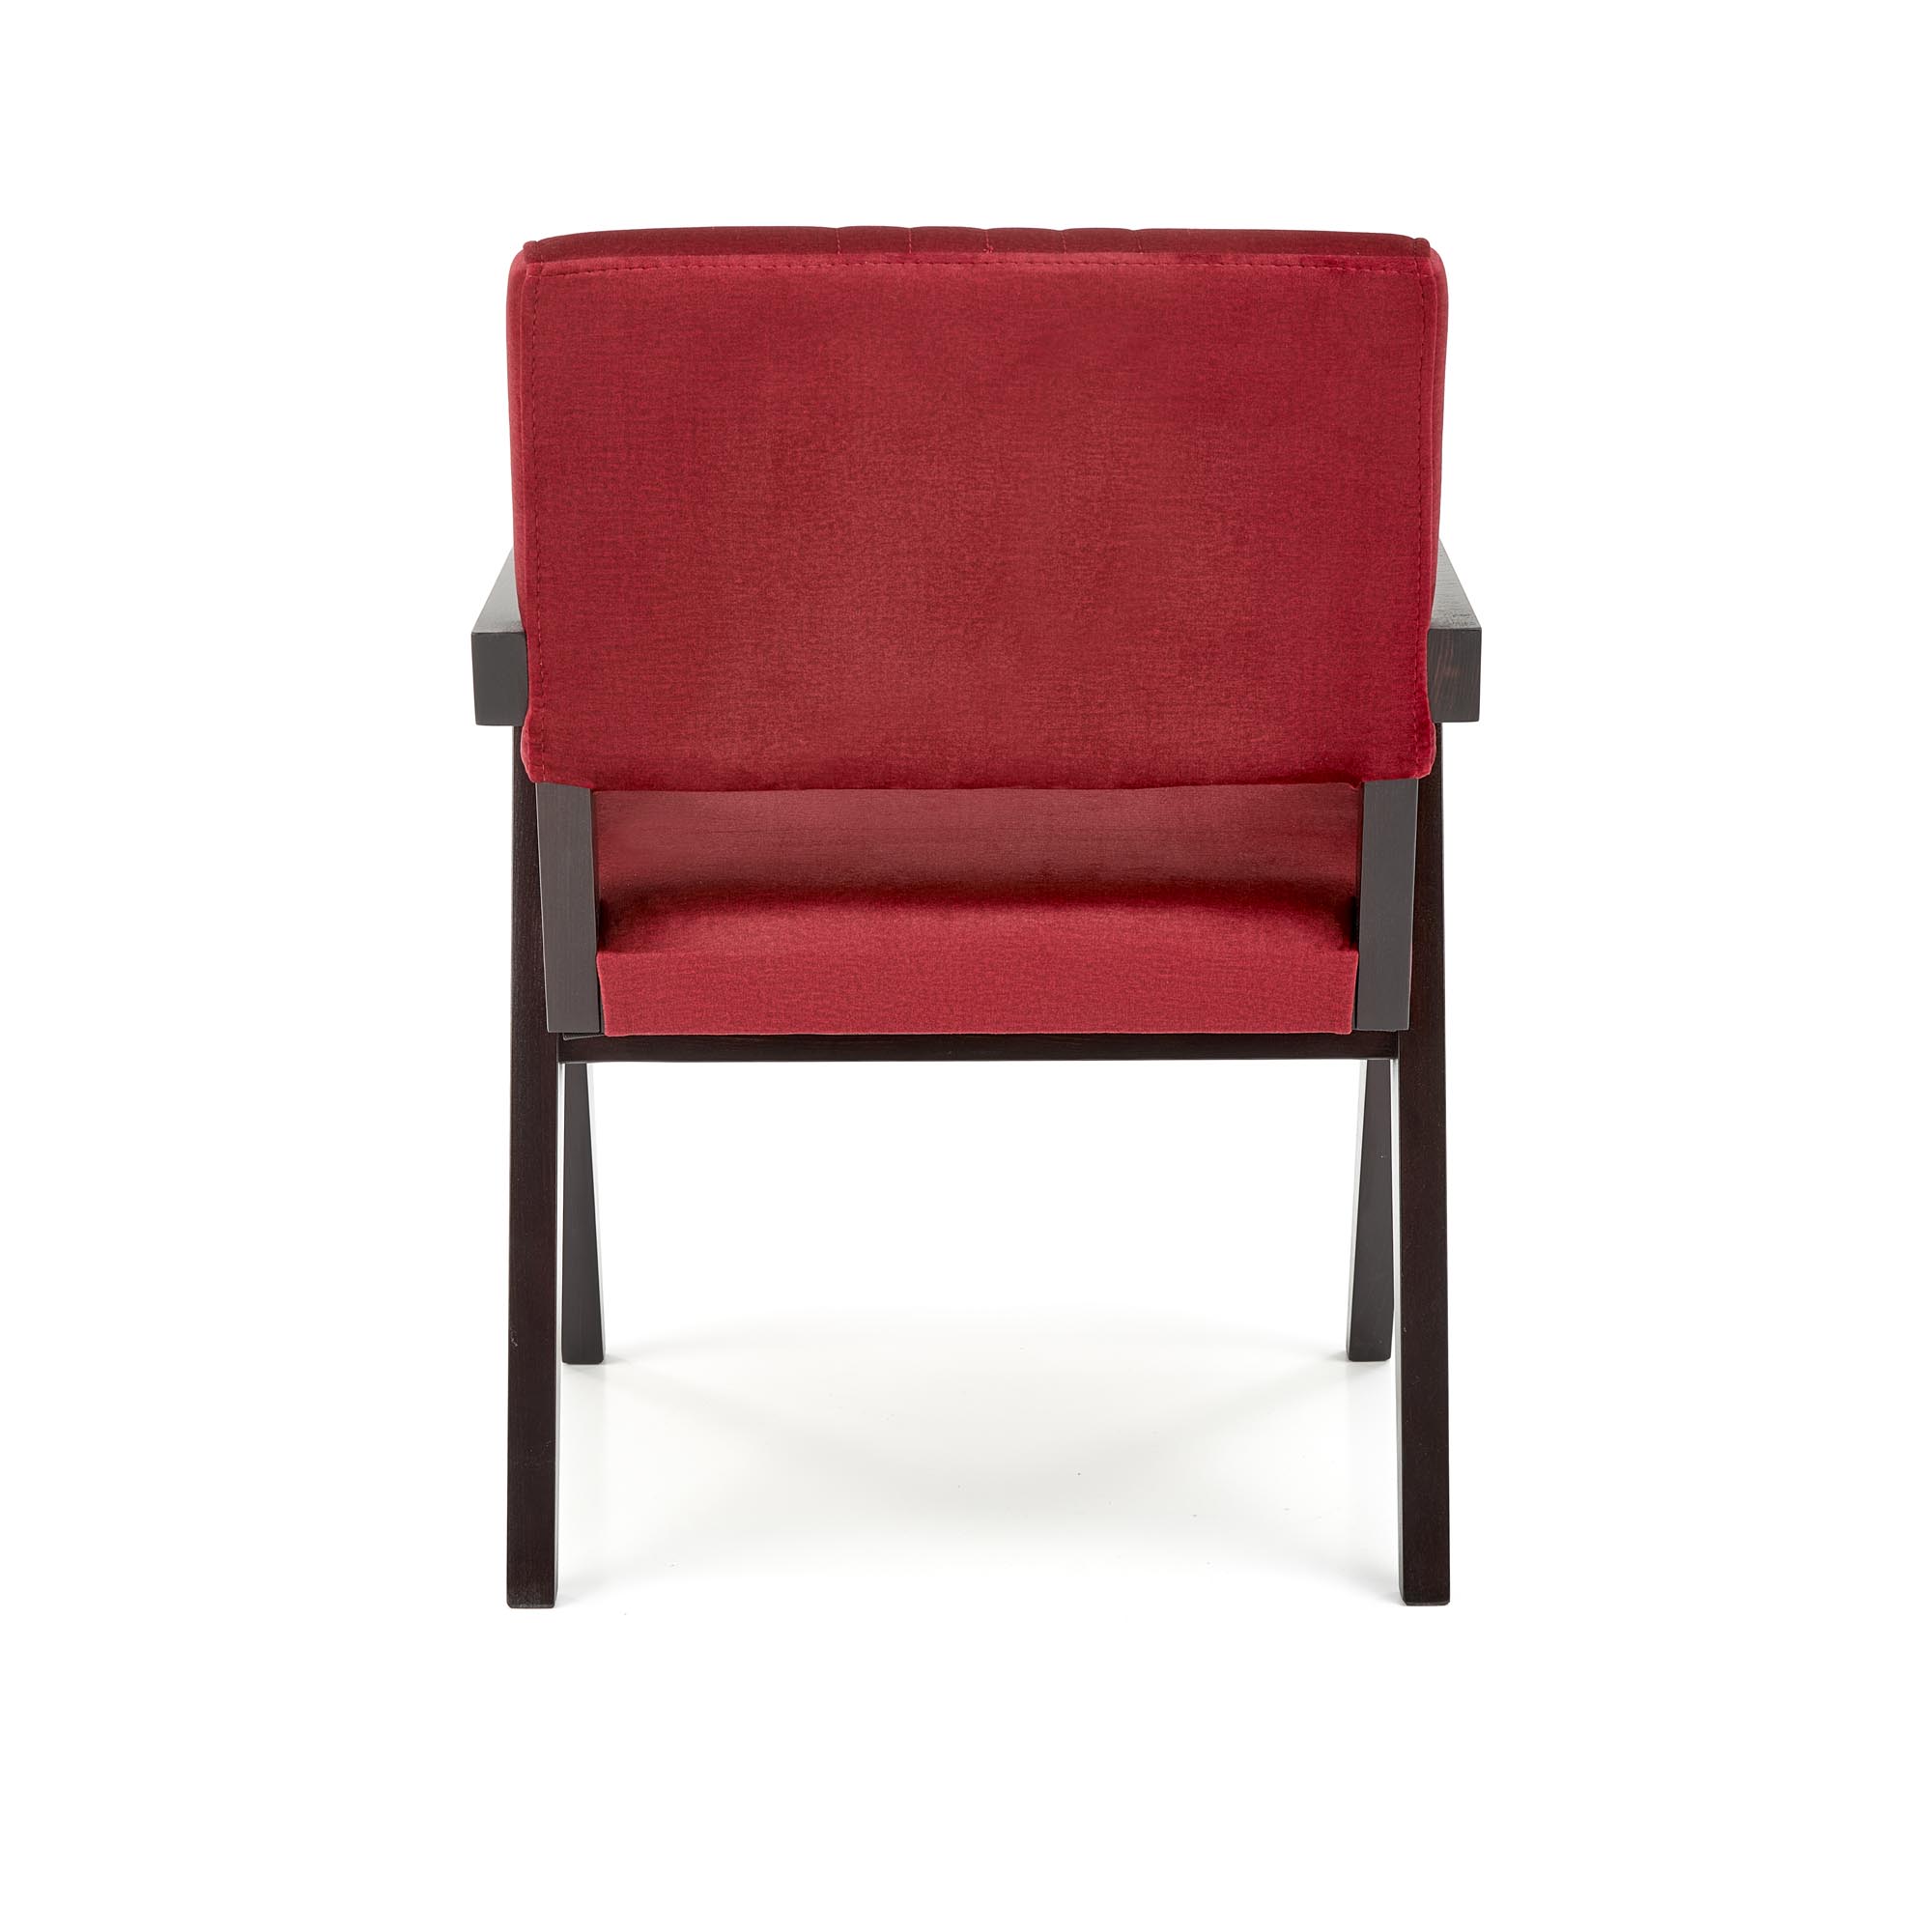 Krzesło tapicerowane z podłokietnikami Memory - heban / bordo krzesło tapicerowane z podłokietnikami memory - heban / bordo